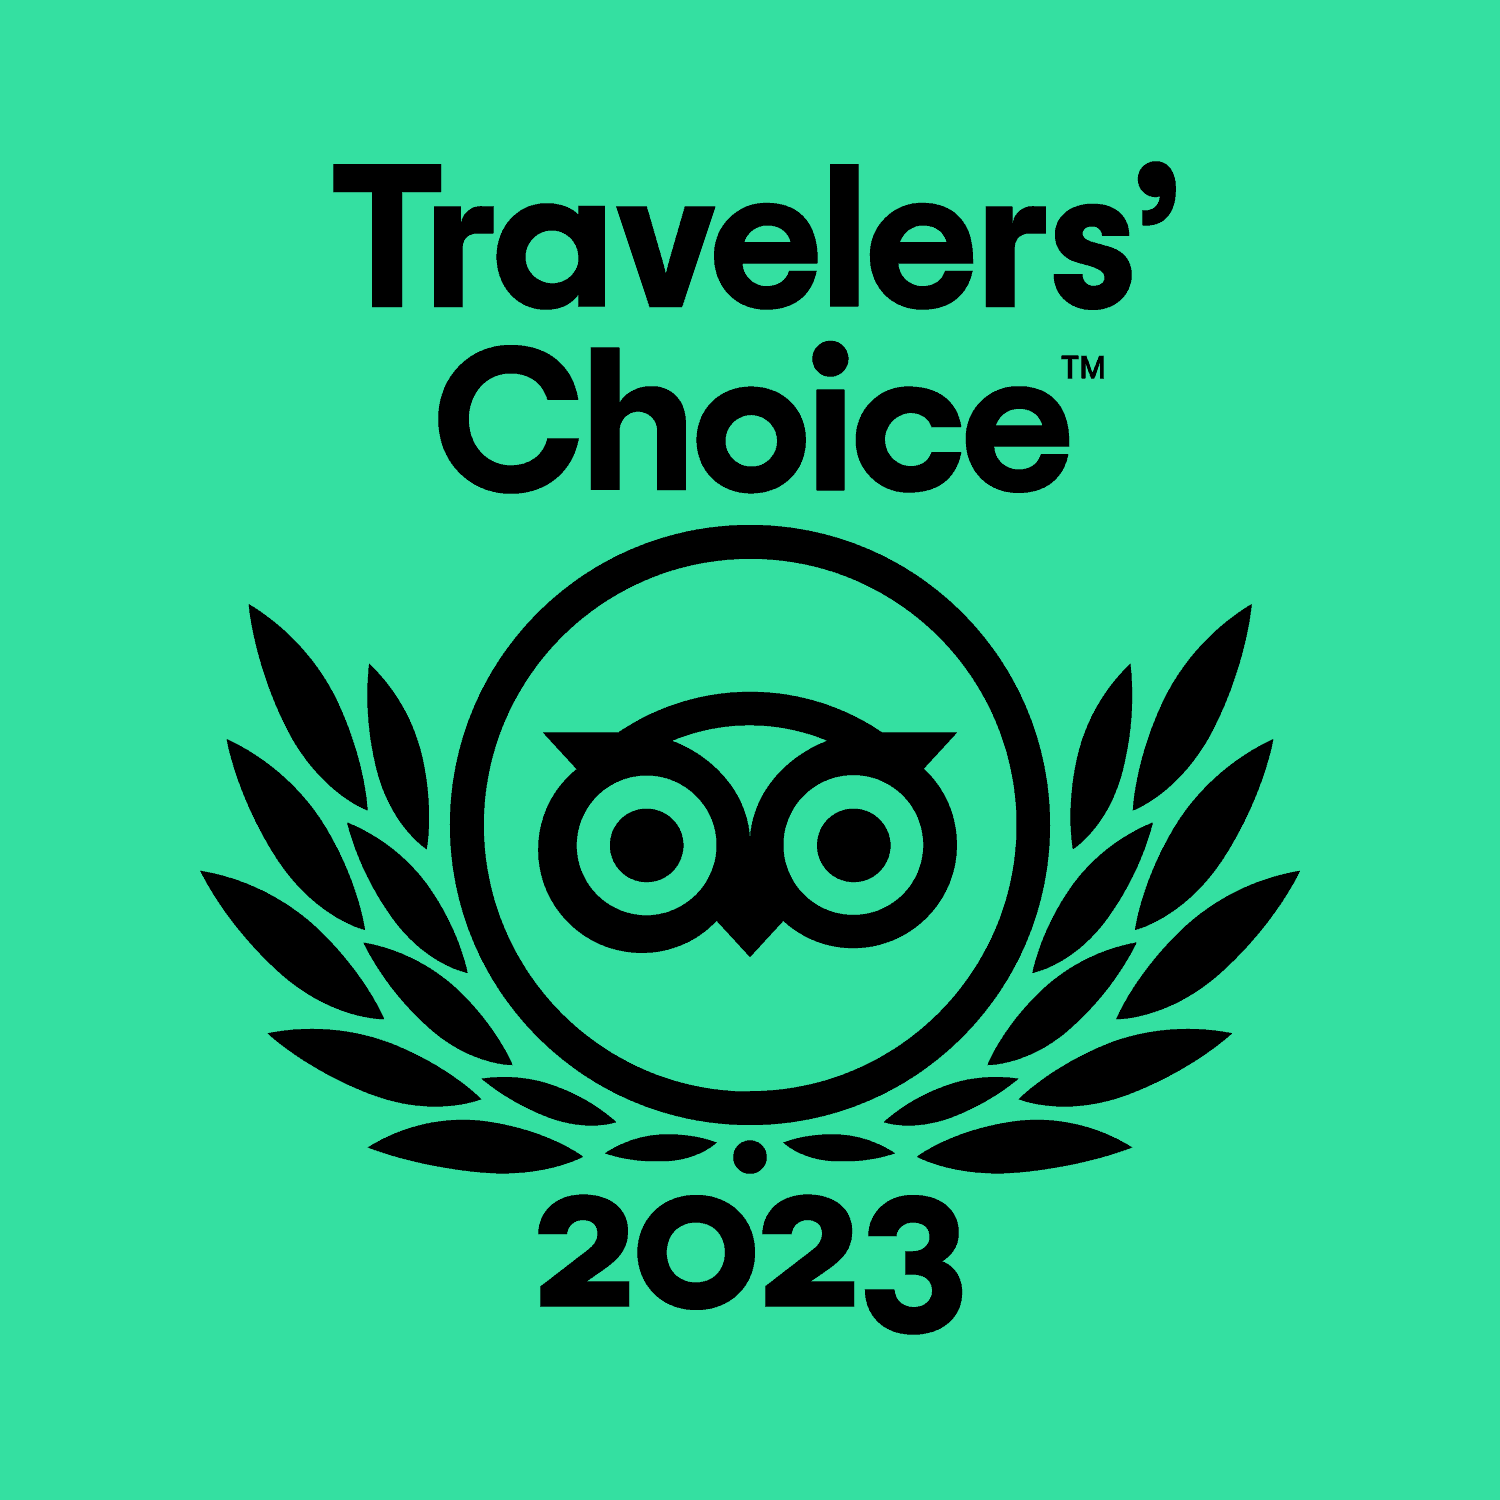 Tripadvisor Traveler's choice award